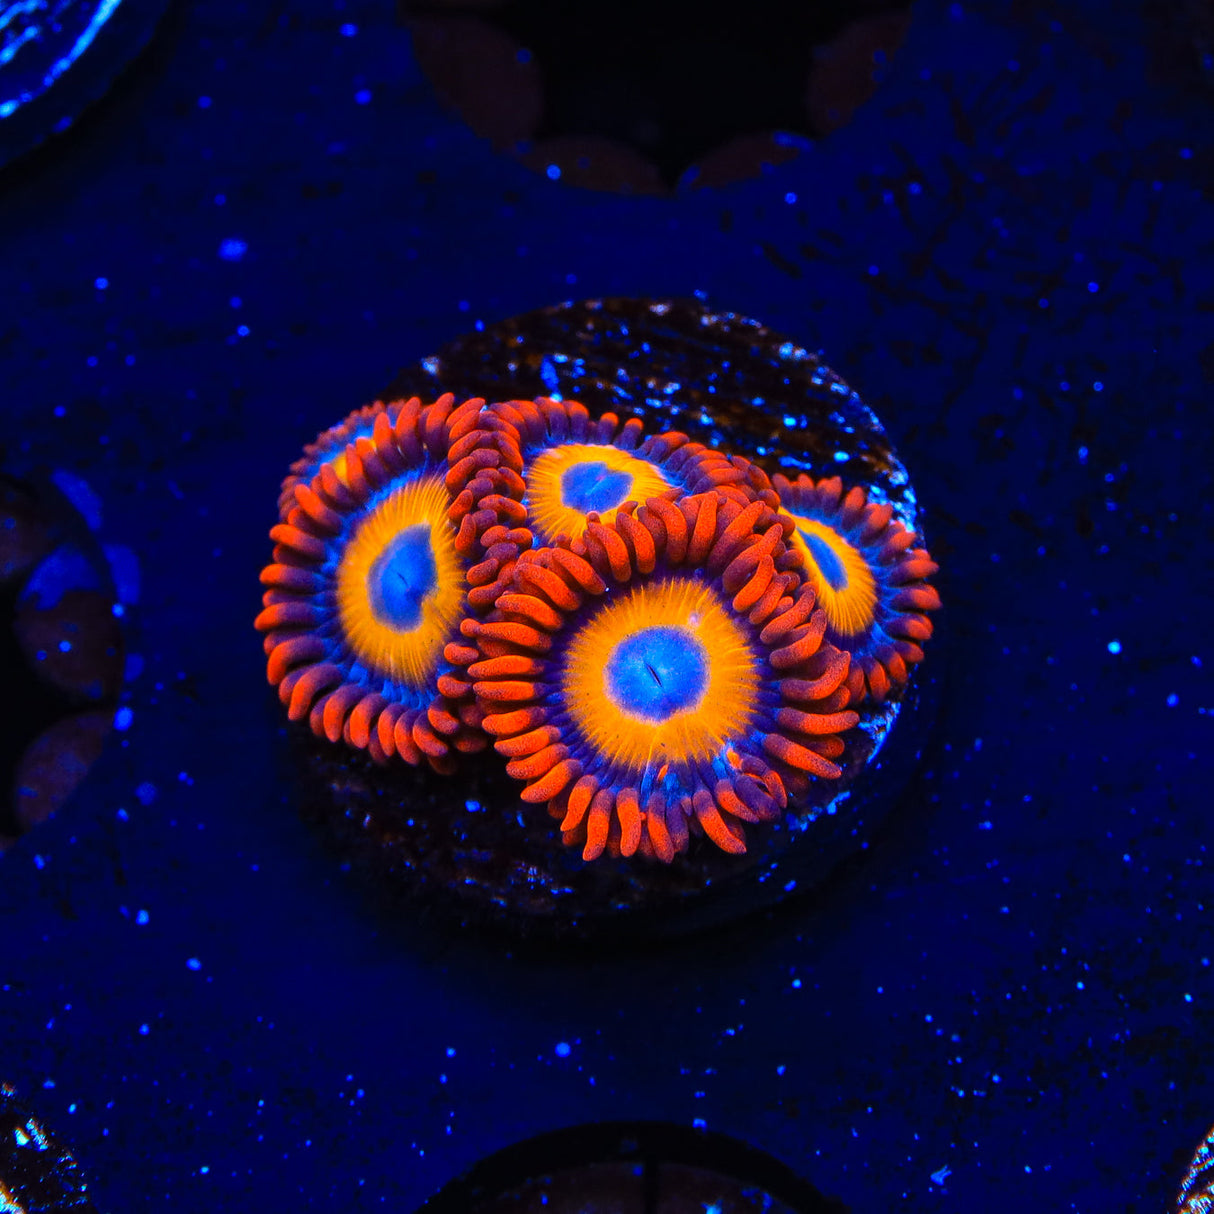 Blue Eye Blondie Zoanthids Coral